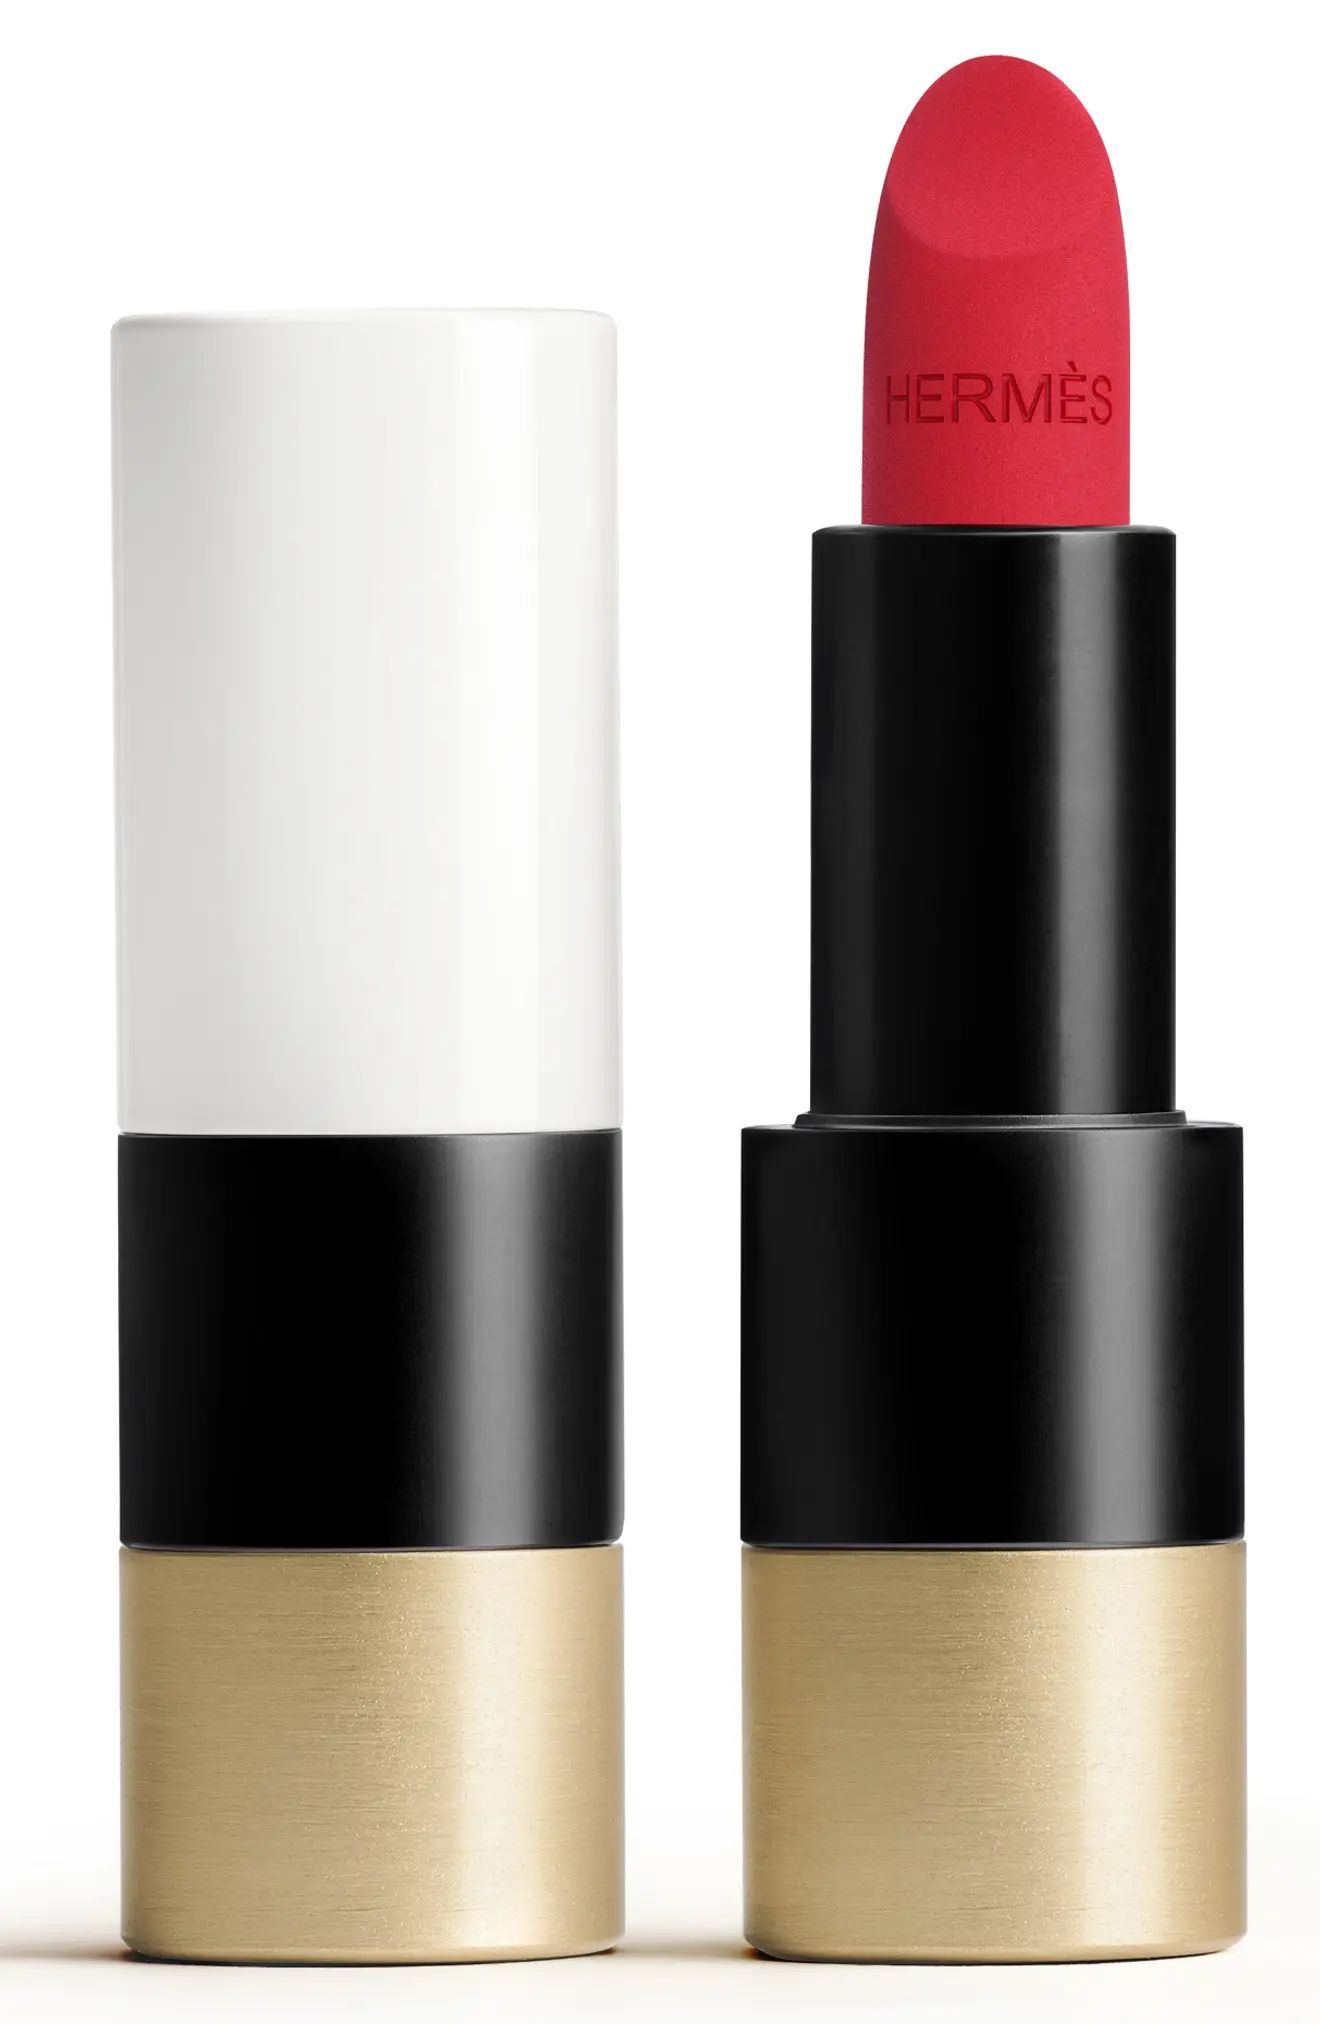 HERMES Rouge Hermes - Matte lipstick in 68 Rouge Bleu at Nordstrom | Nordstrom